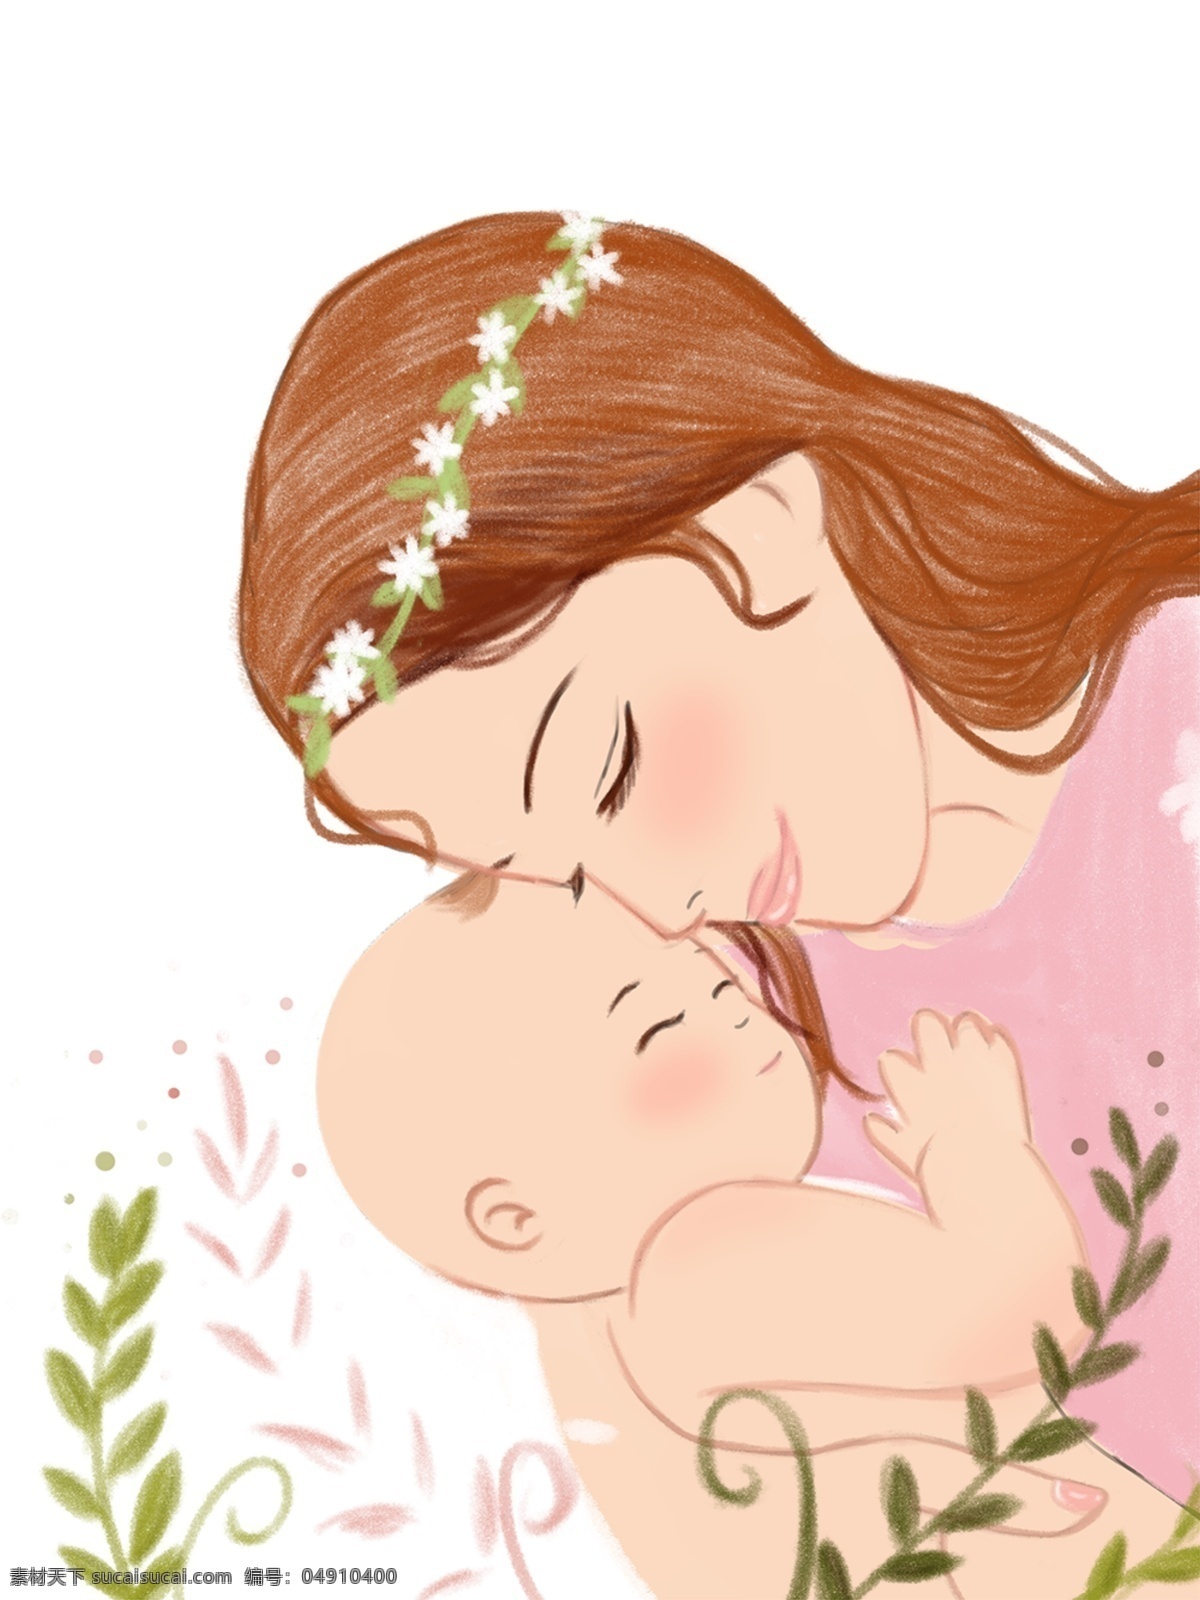 母婴 主题 卡通 插画 手绘 精美 海报插画 广告插画 小清新 简约风 装饰图案 母婴主题插画